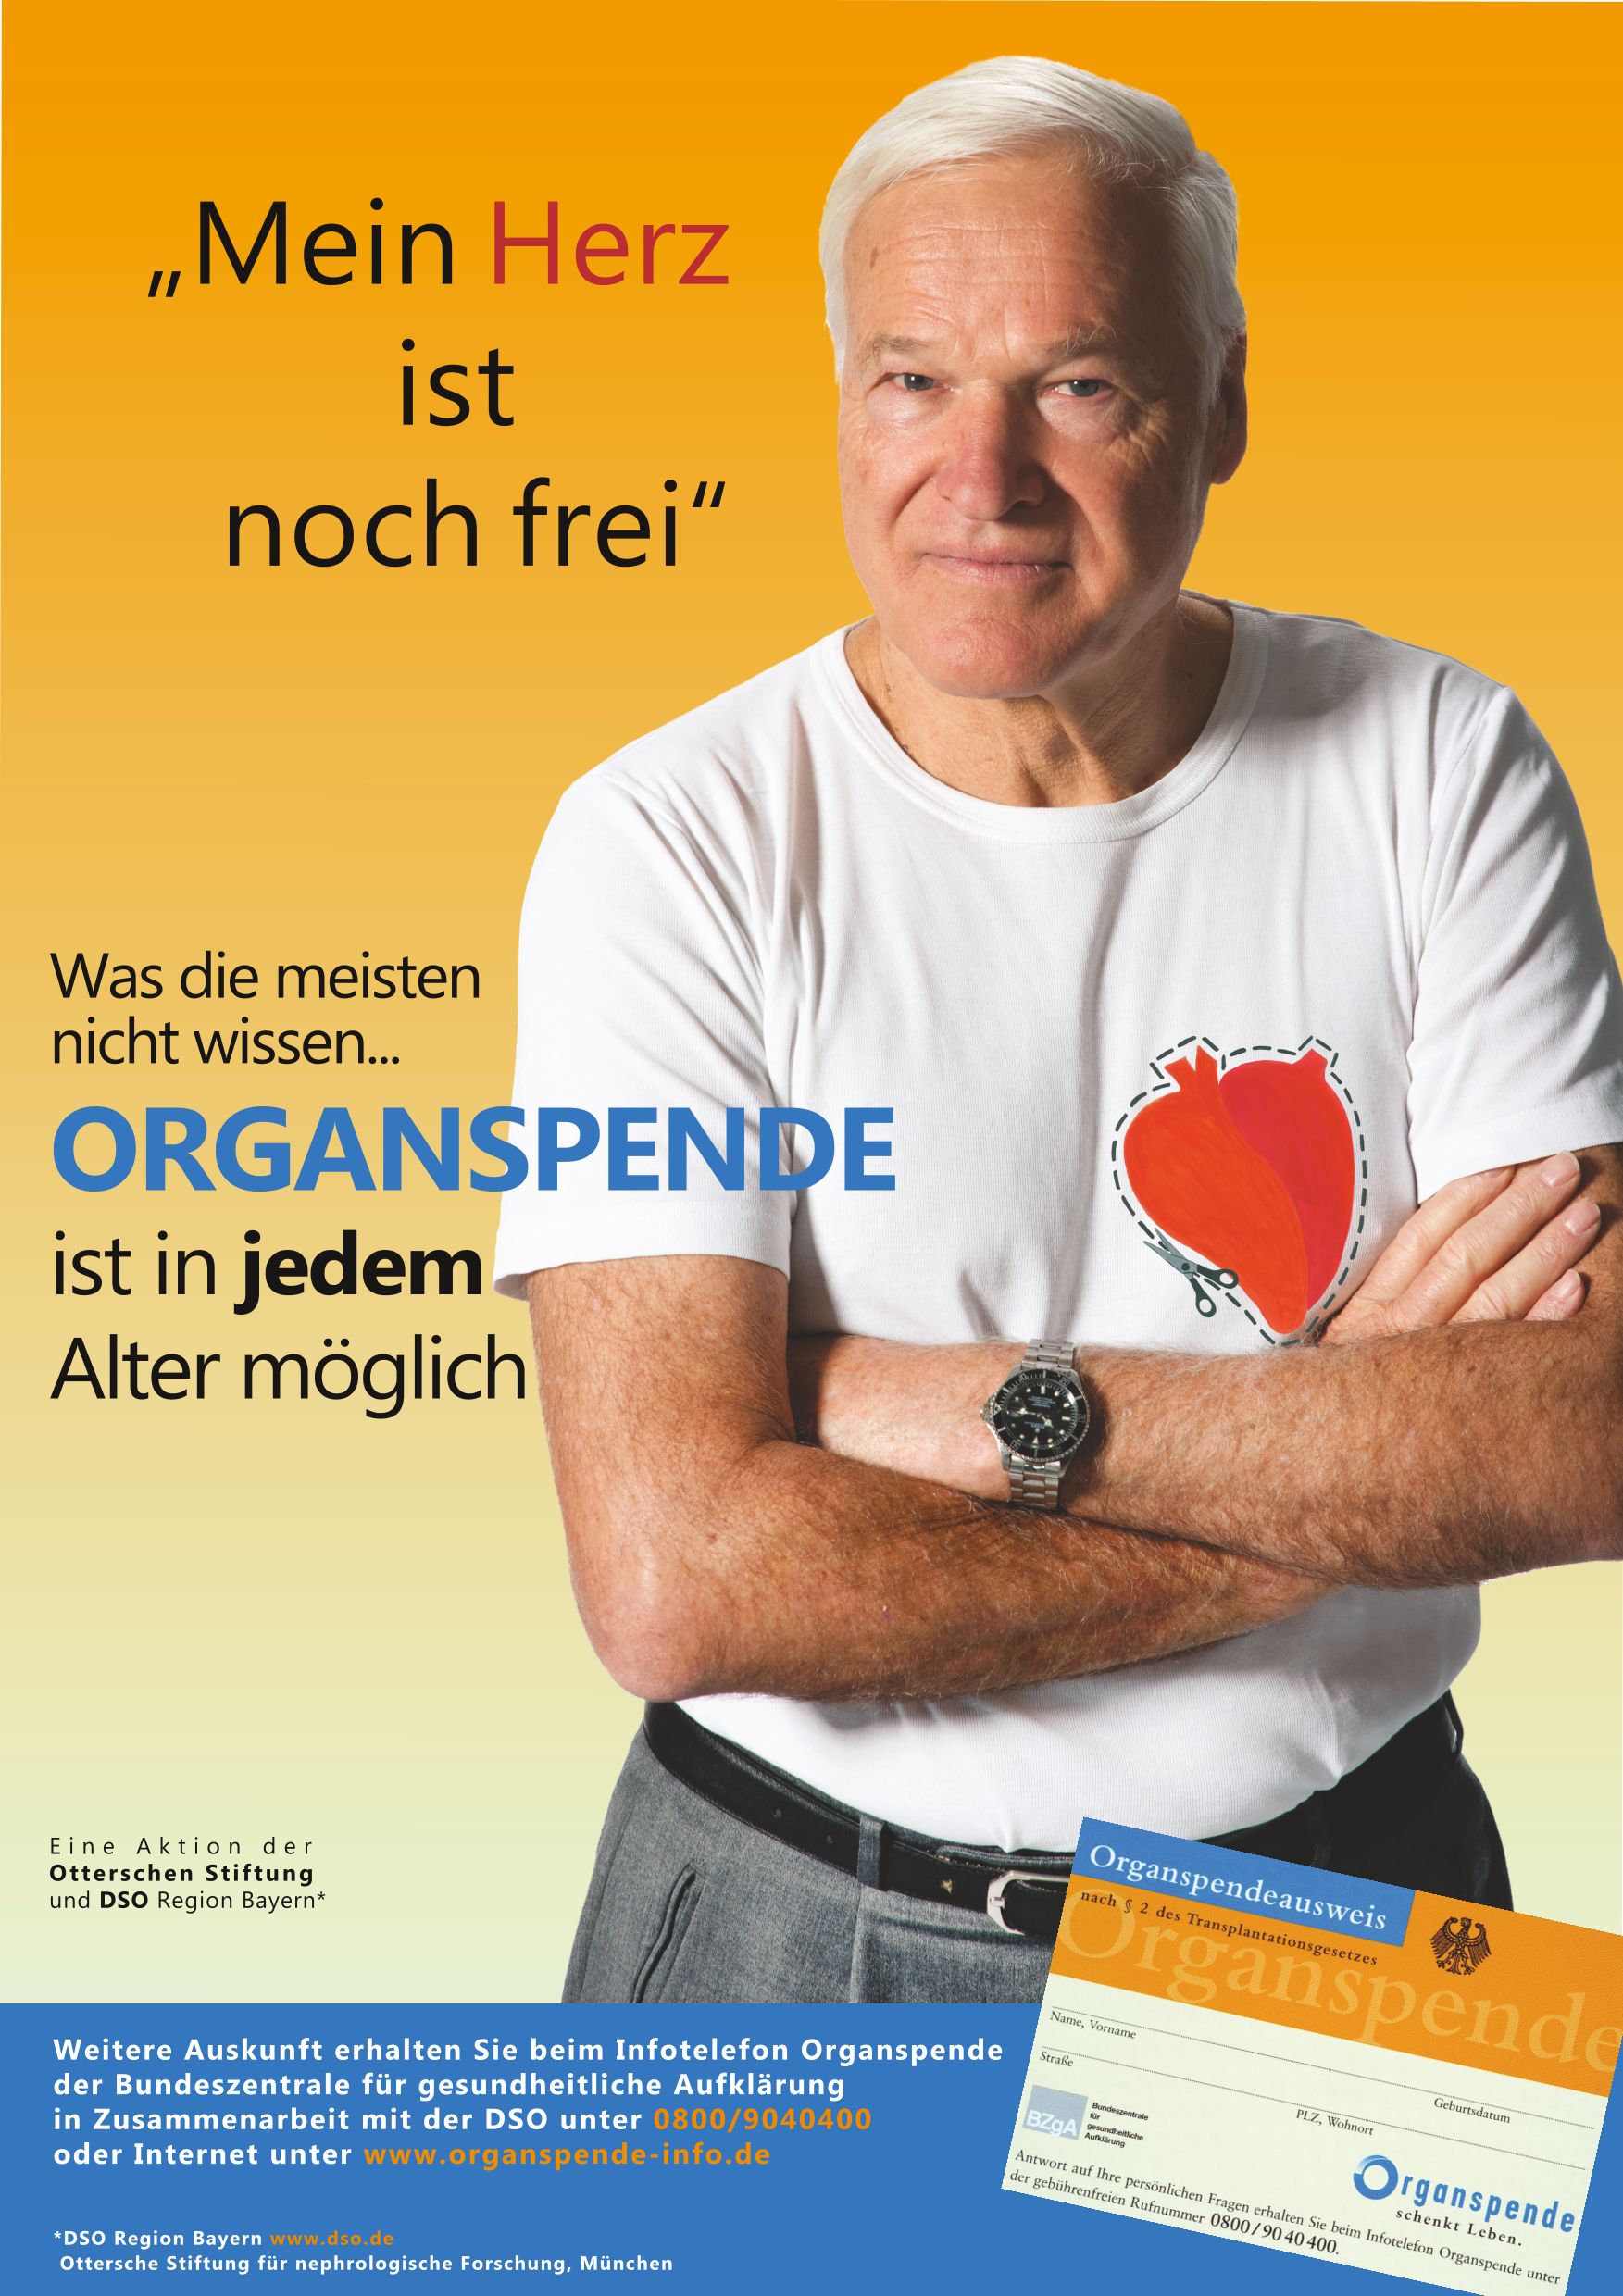 Werbemotiv: Mein Herz ist noch frei - Organspende ist in jedem Alter möglich.